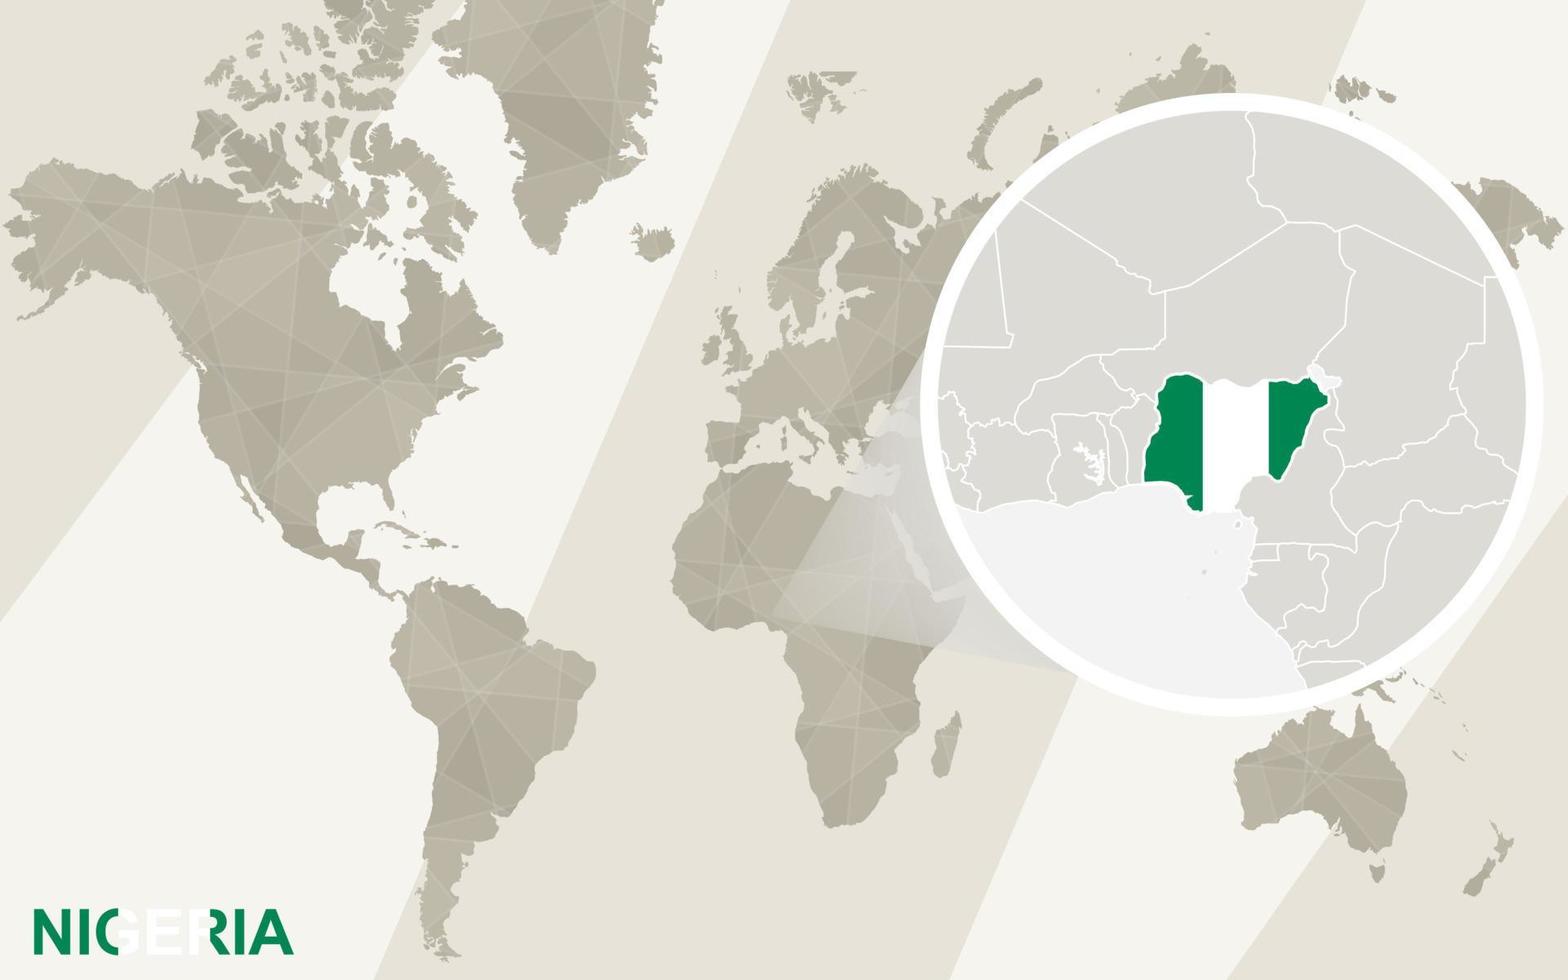 zoom en el mapa y la bandera de nigeria. mapa del mundo. vector